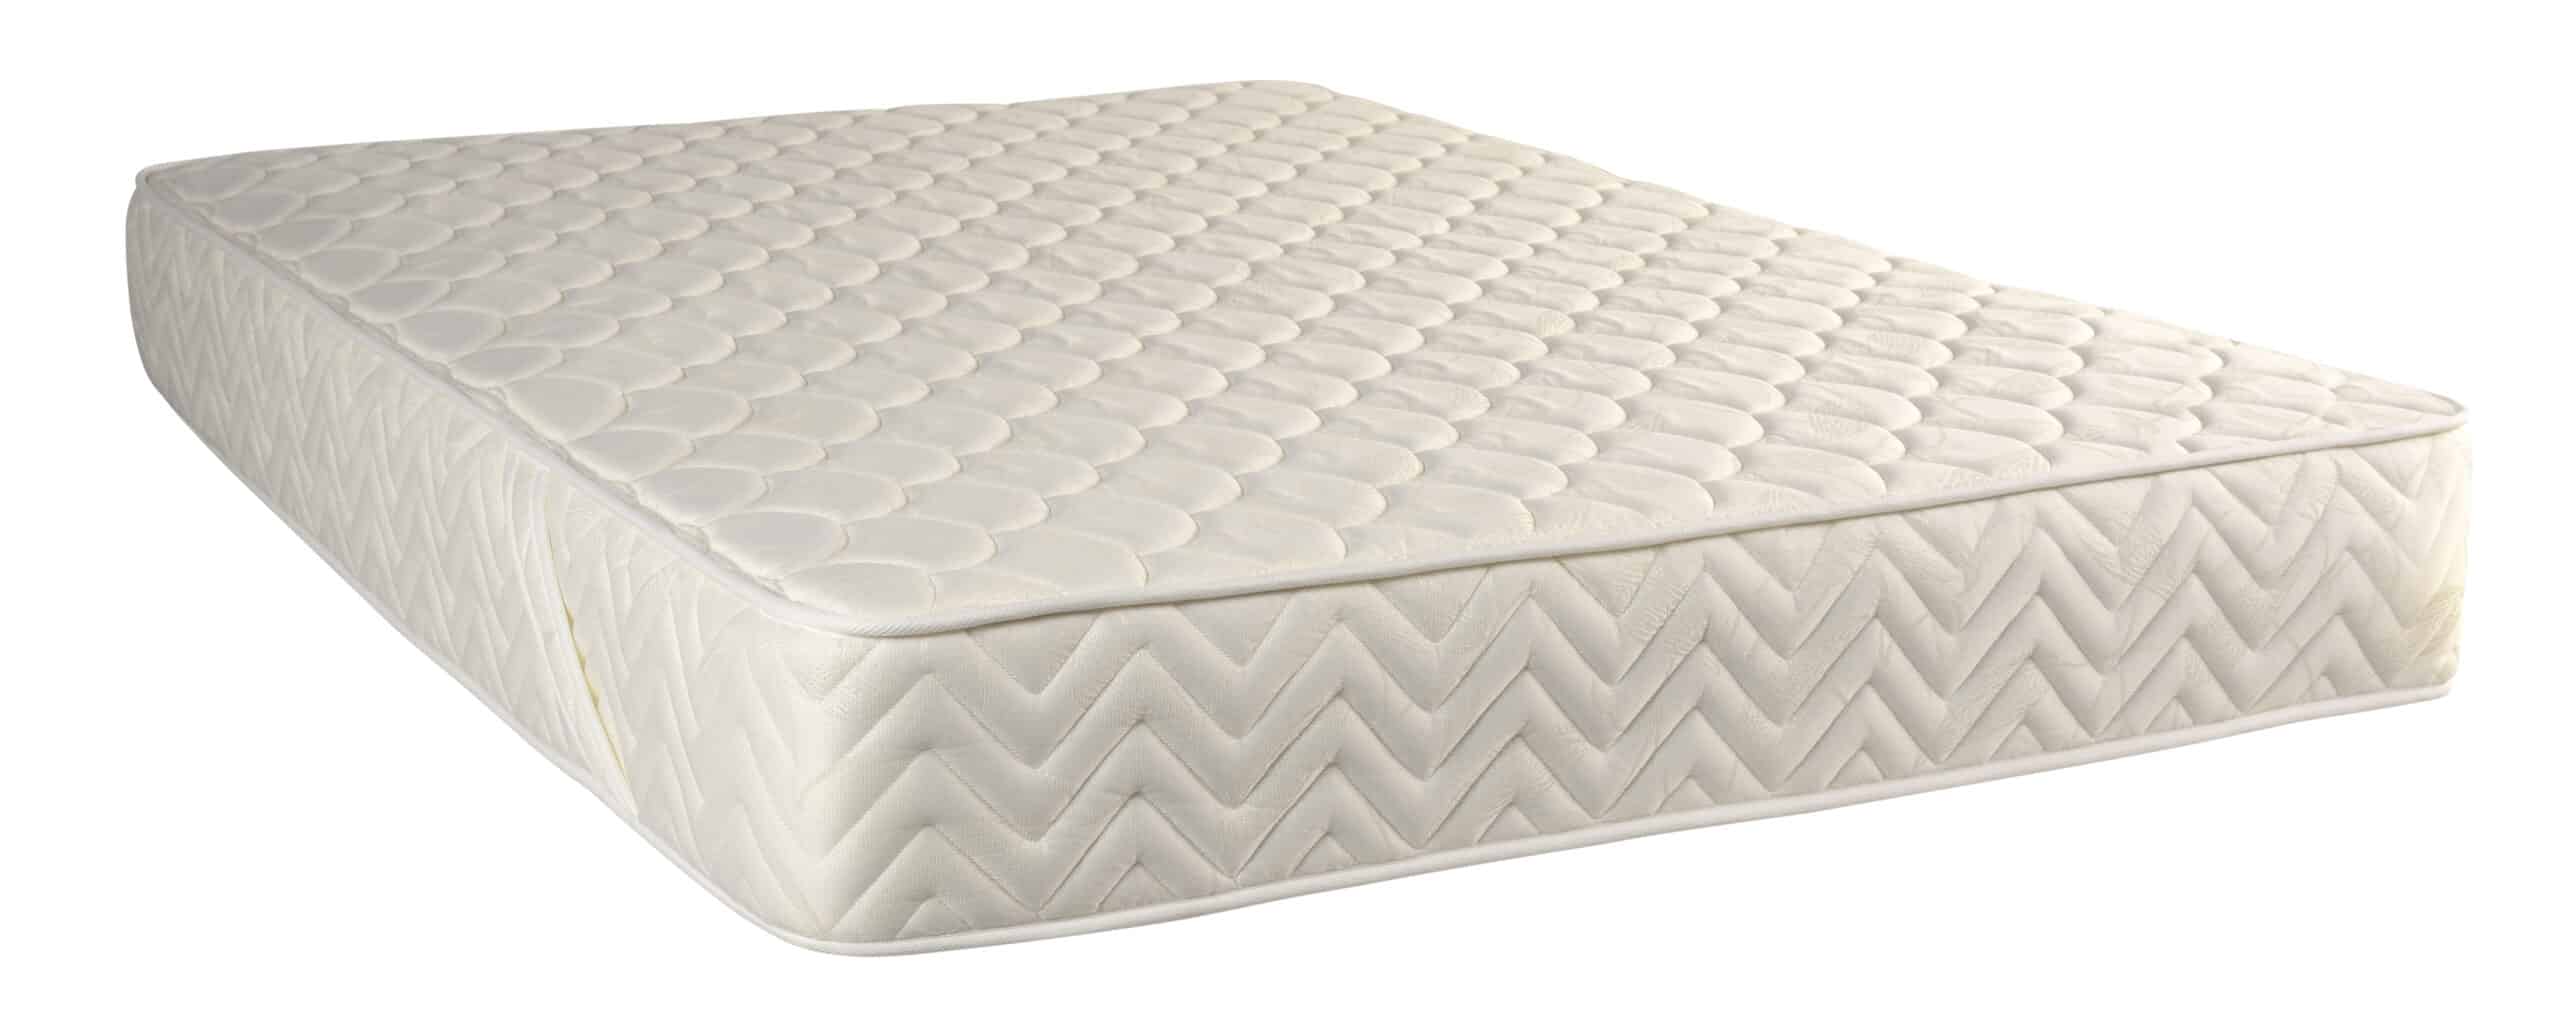 queen mattress in truck bed